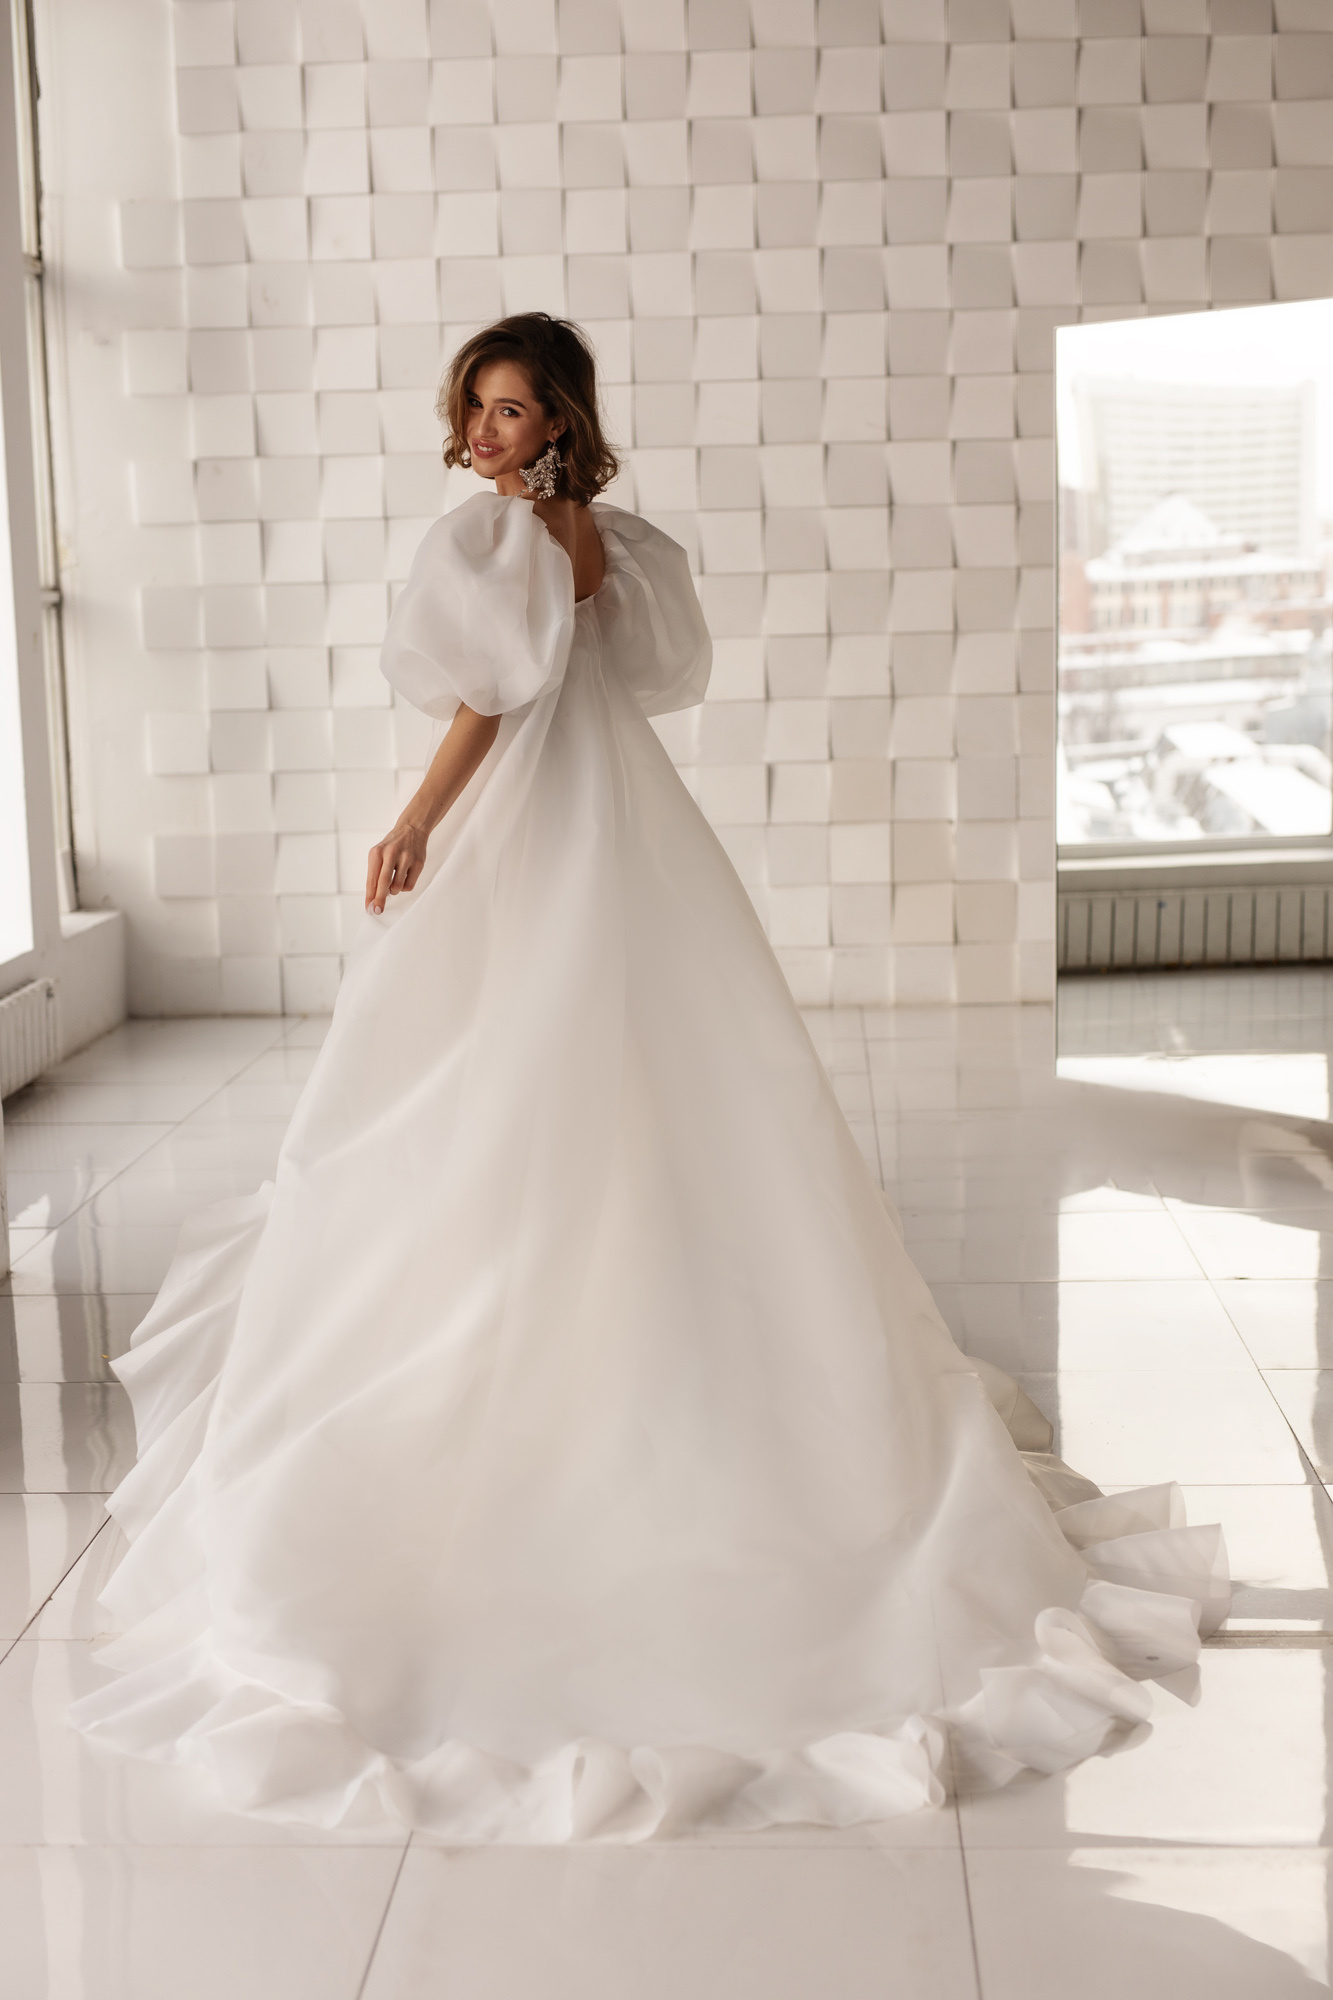 Купить свадебное платье «Бачио» Анна Кузнецова из коллекции Спосами 2021 года в салоне «Мэри Трюфель»